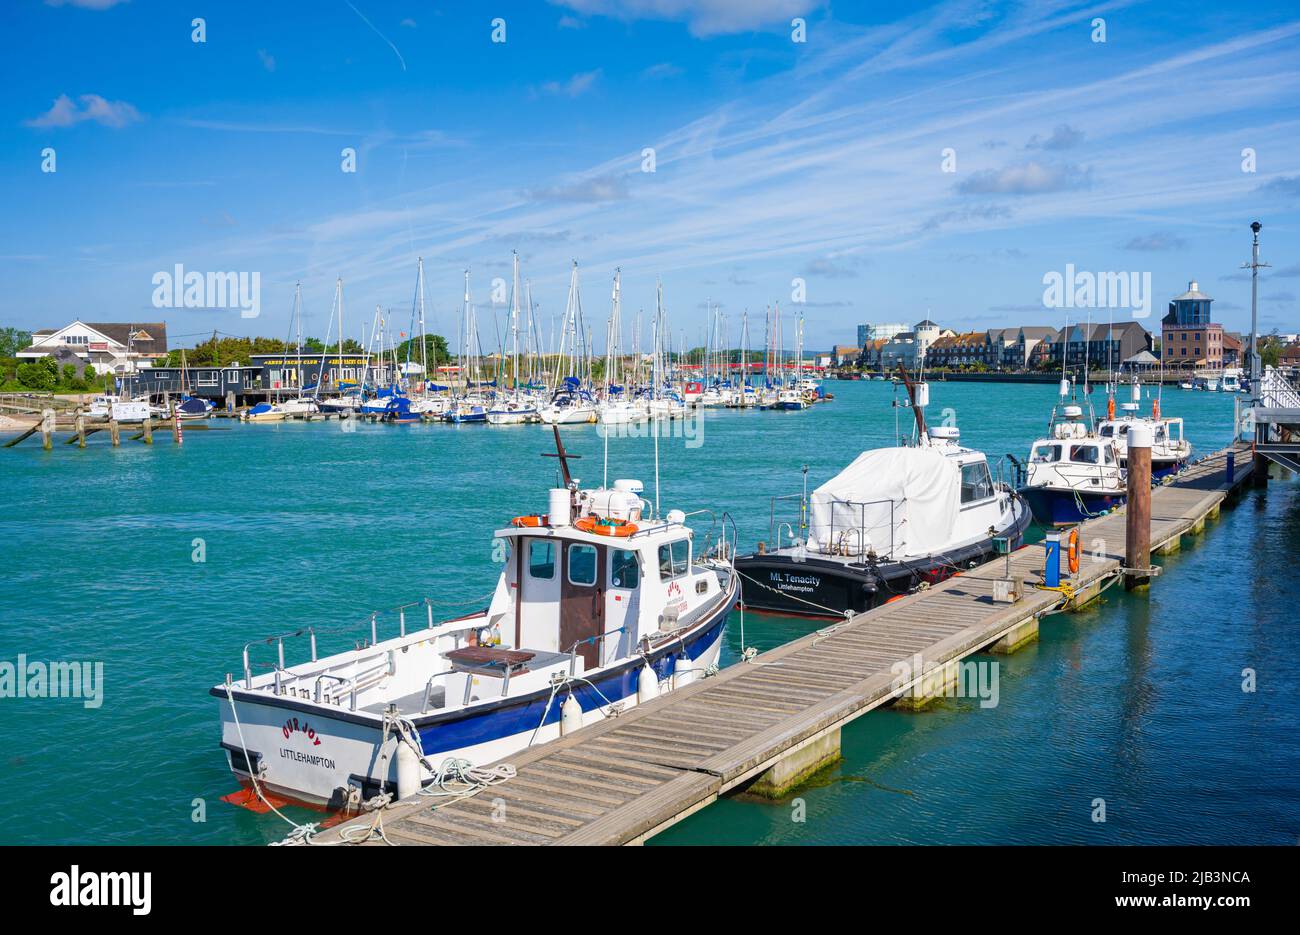 Des bateaux amarrés et attachés à un ponton sur la rivière Arun à Littlehampton, West Sussex, Angleterre, Royaume-Uni. Banque D'Images